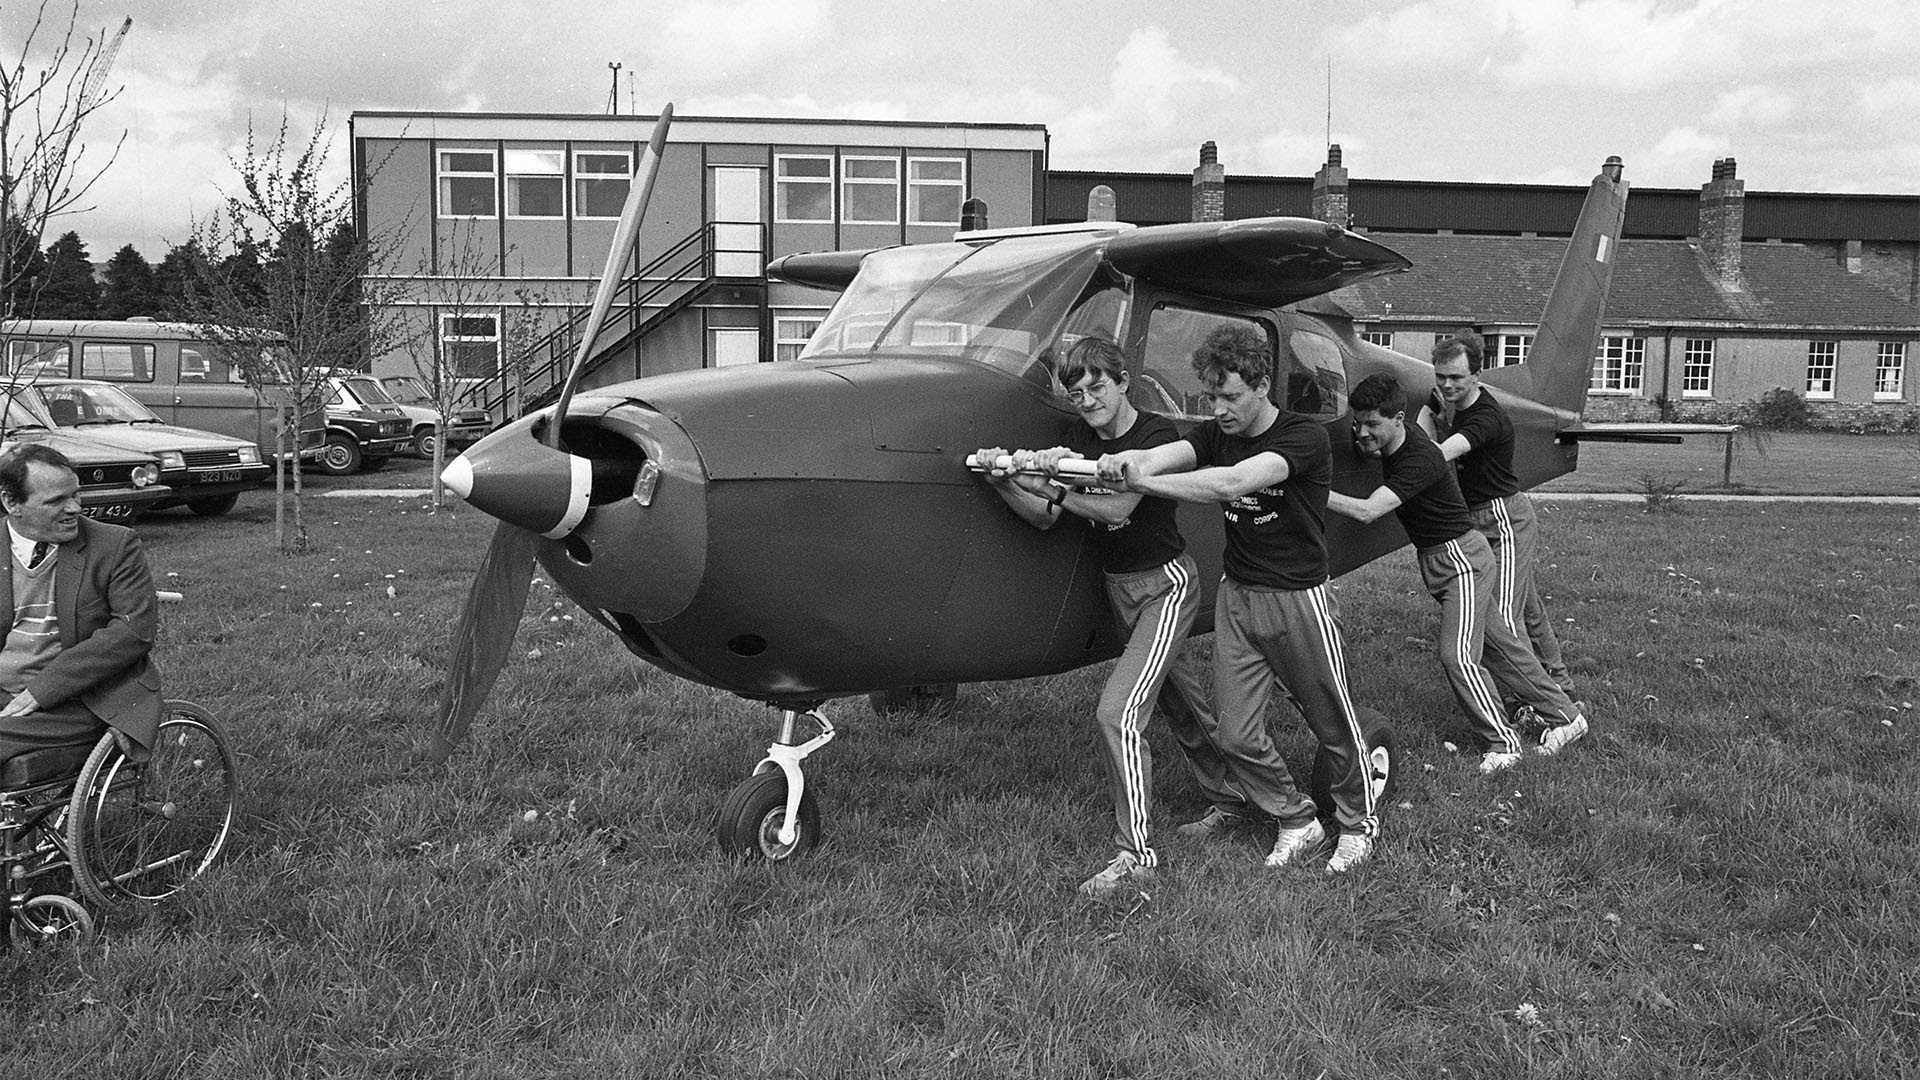 Cuatro hombres de la fuerza aérea irlandesa empujan un Cessna 172 sin alas, el avión se fabrica hace más de 60 años y a lo largo de toda su historia ha sido muy utilizado. (Part of the Independent newspapers Ireland/NLI Collection).